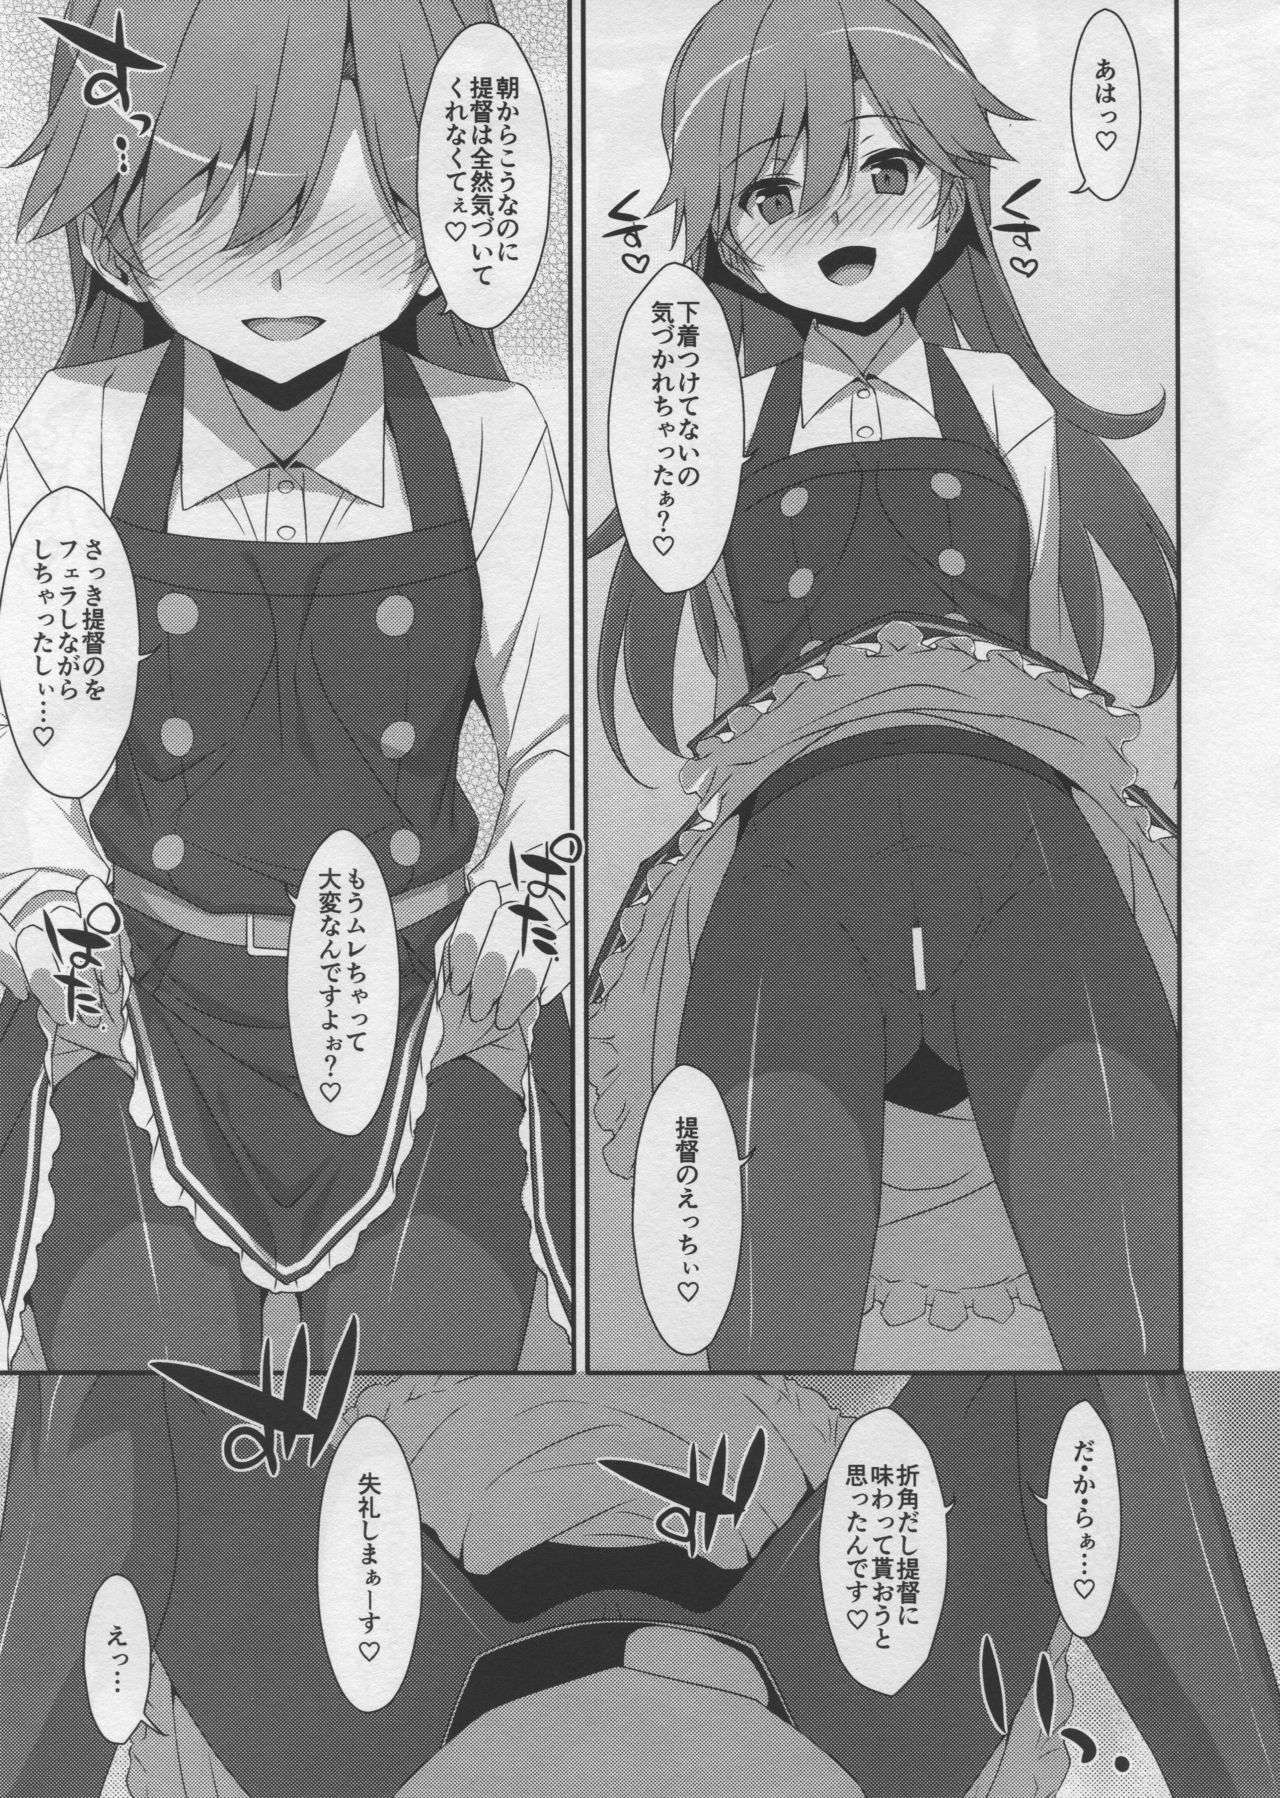 (C96) [TIES (タケイオーキ)] Admiral Is Mine♥ 2 (艦隊これくしょん -艦これ-)